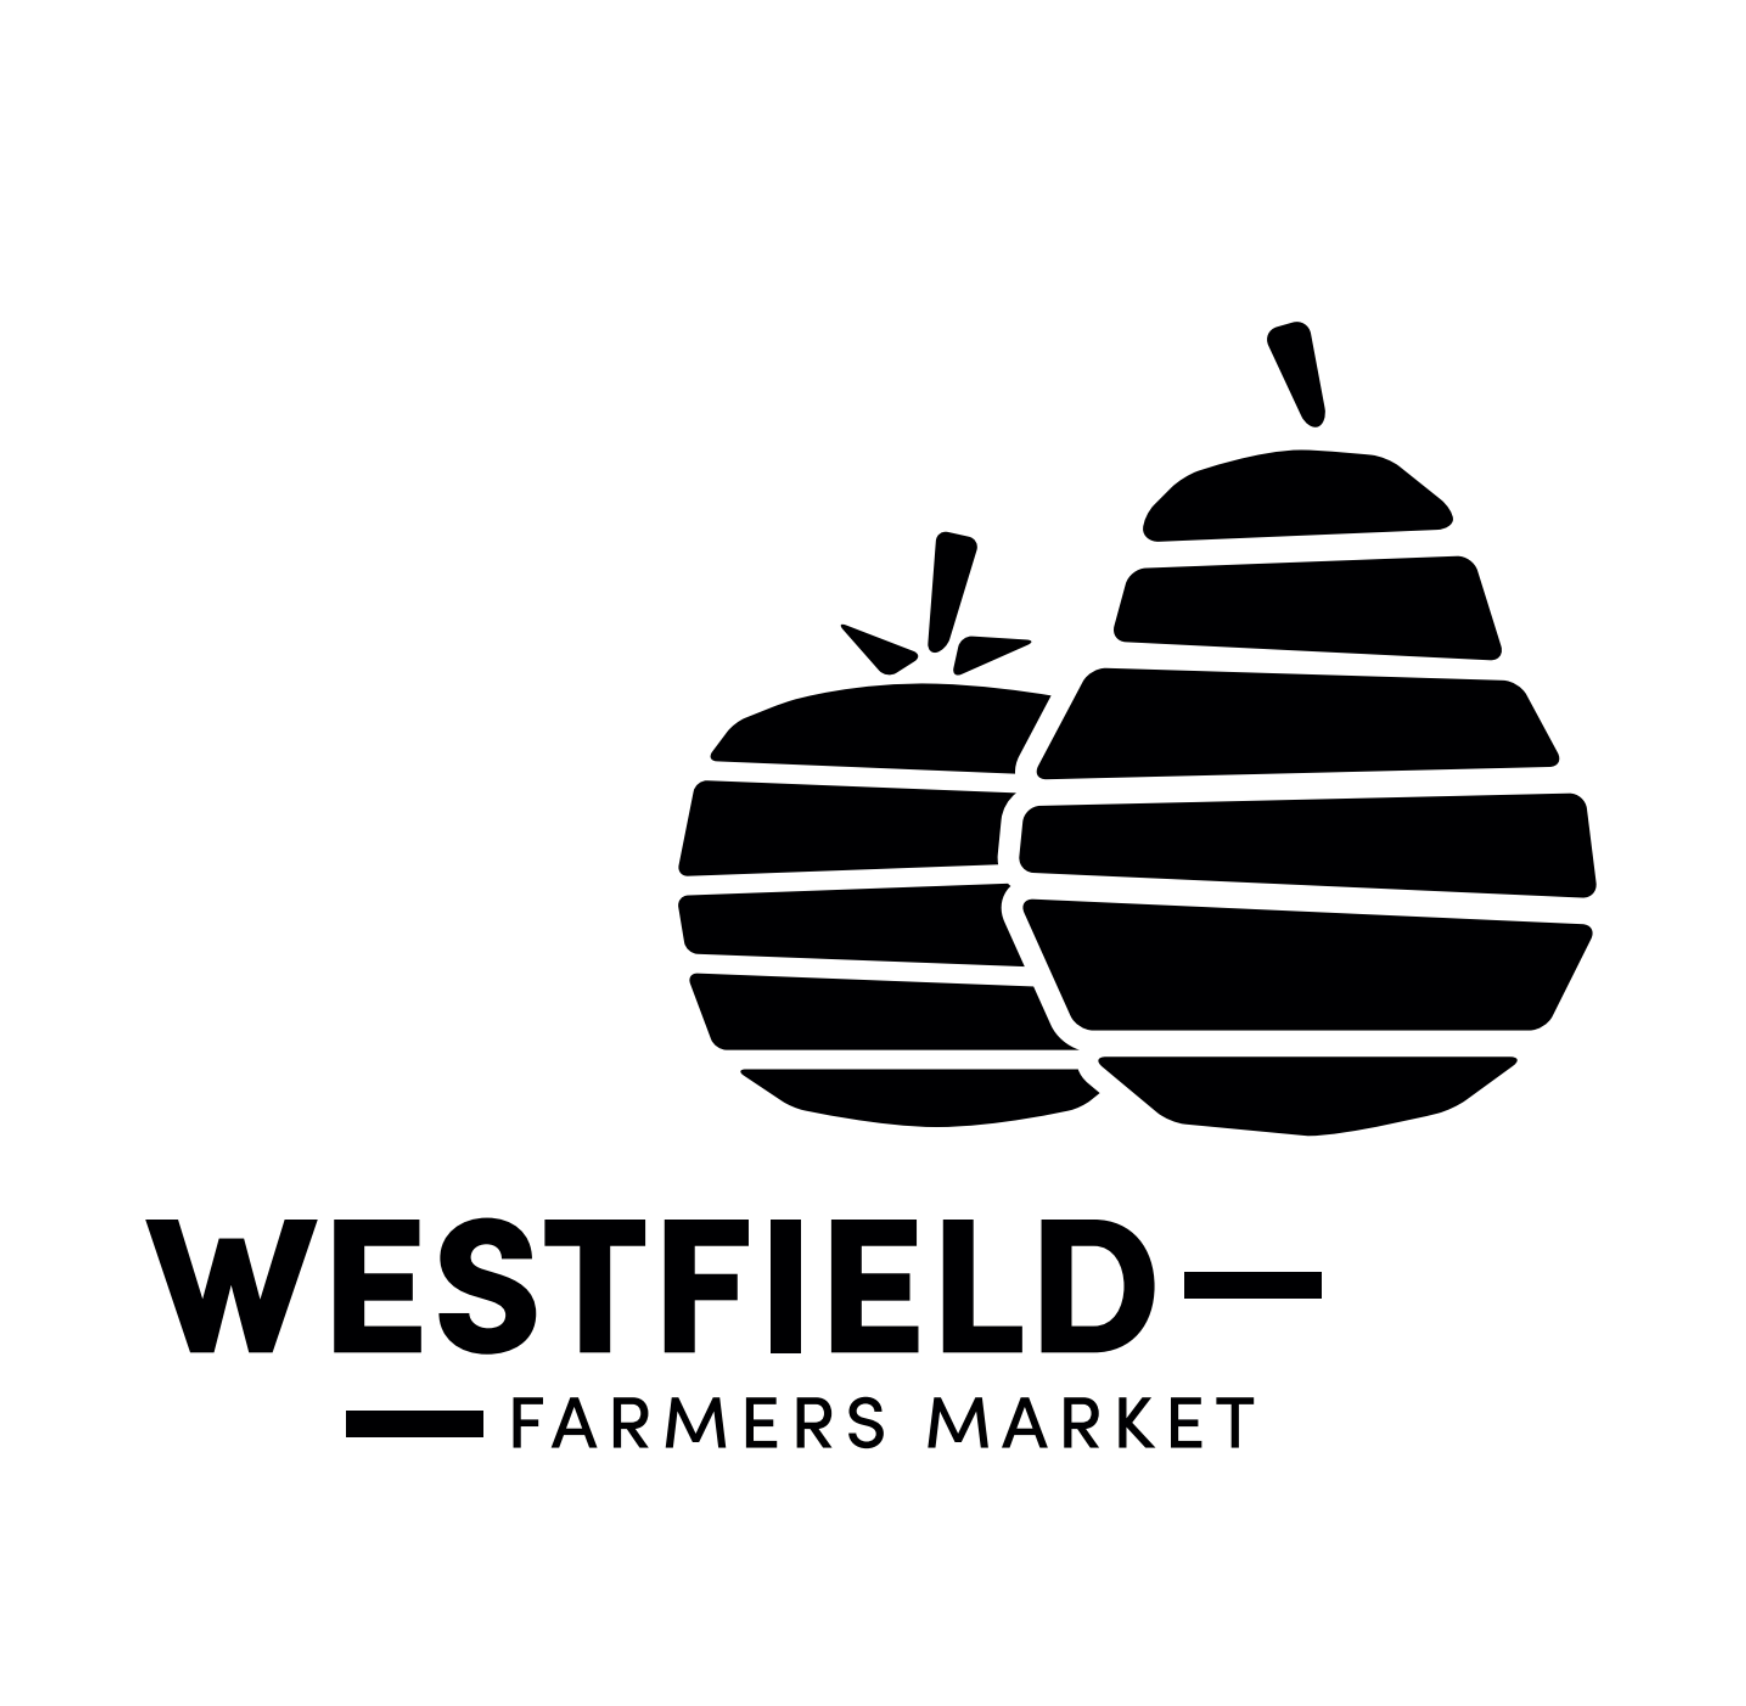 The Westfield Farmers Market